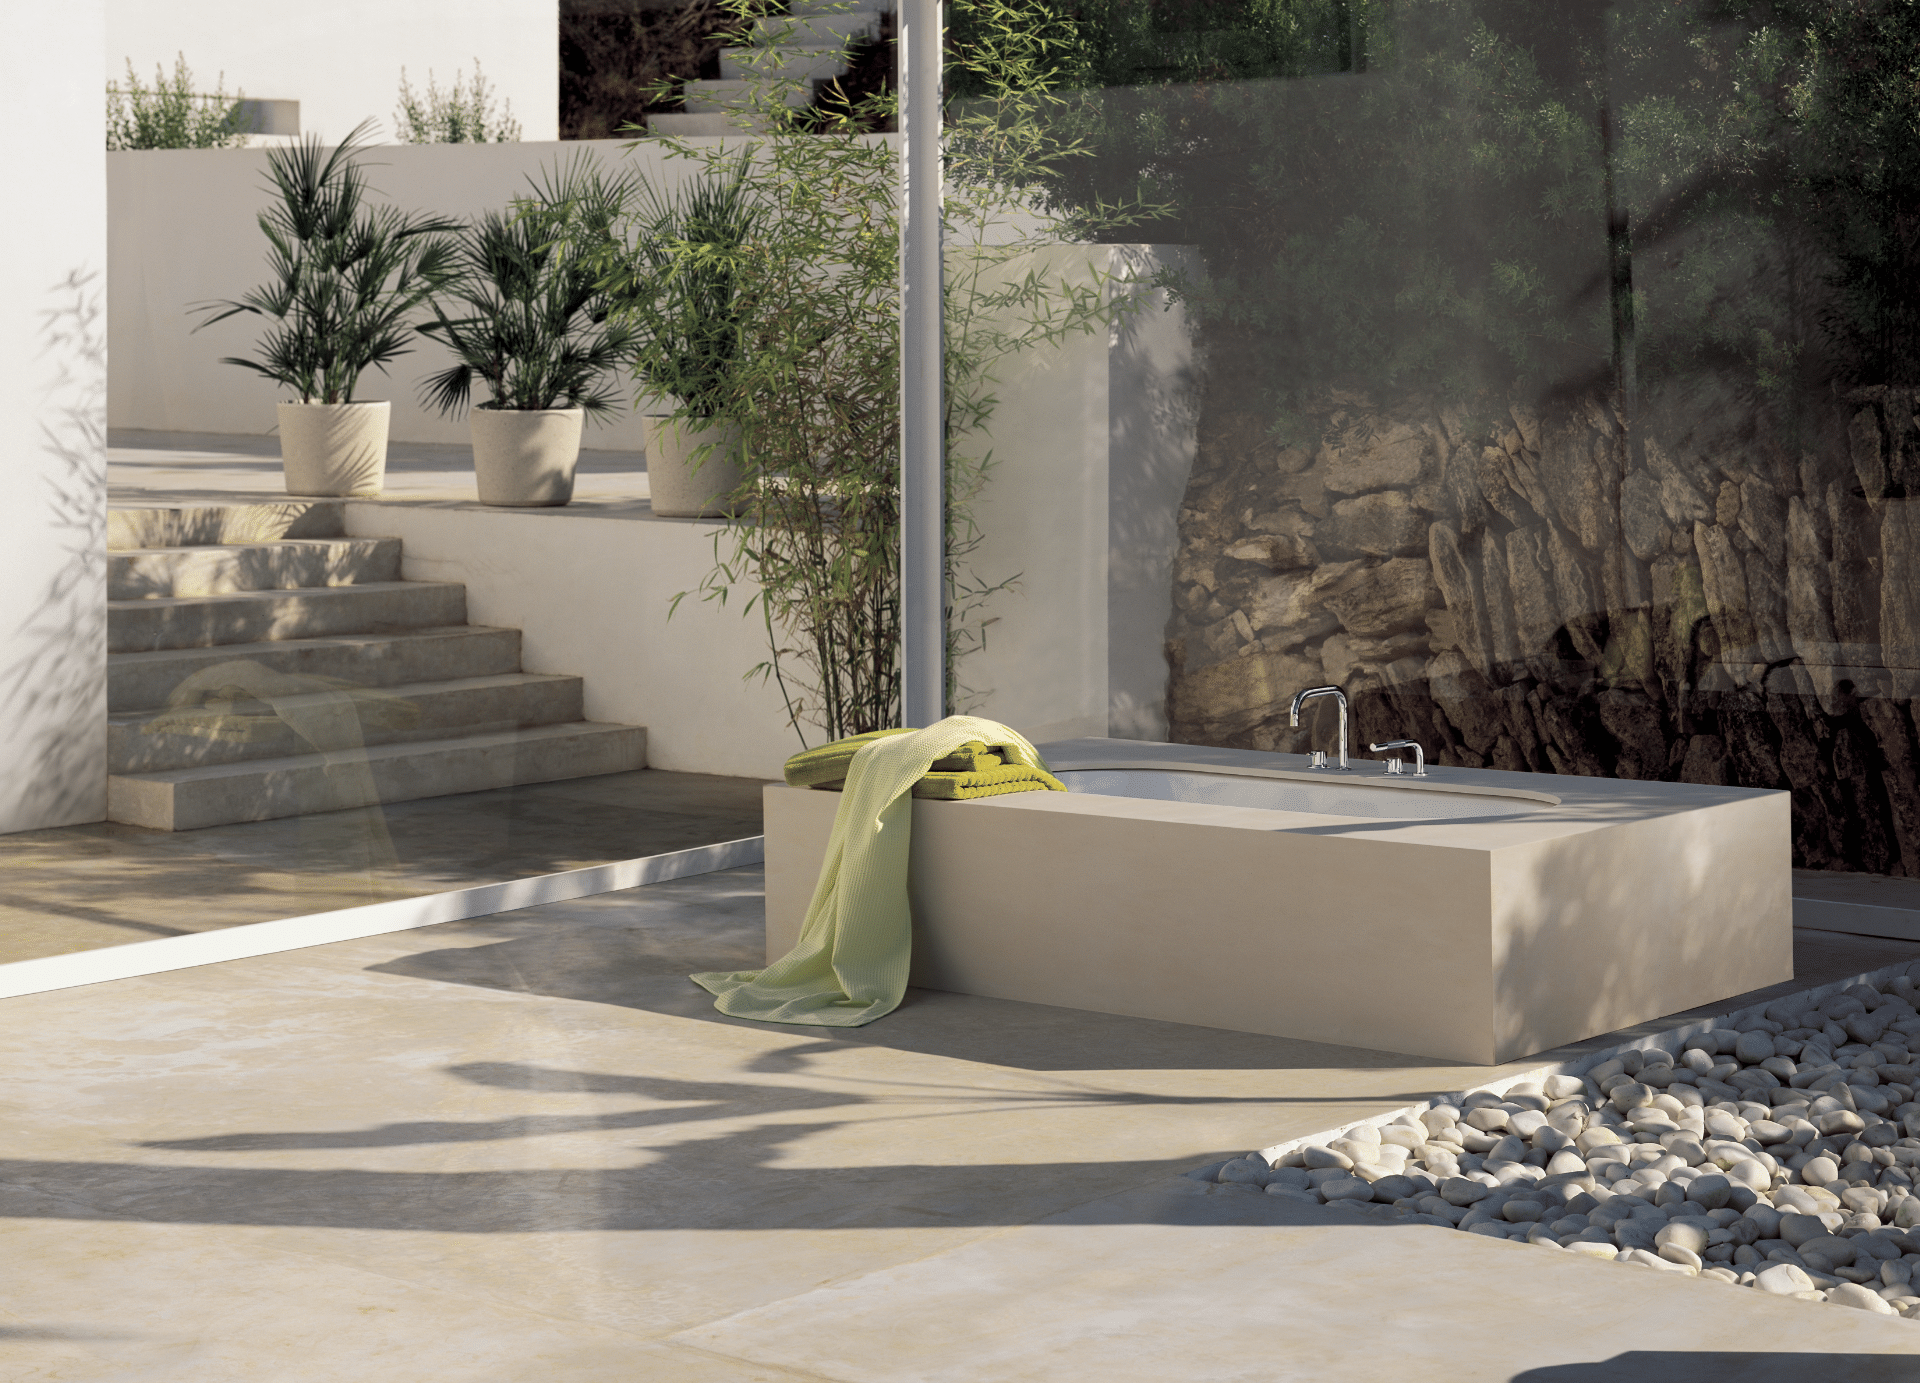 VOLA zeigt einen Garten mit gefliester Terrasse und Outdoor-Badewanne in beige mit silbernen Armaturen.